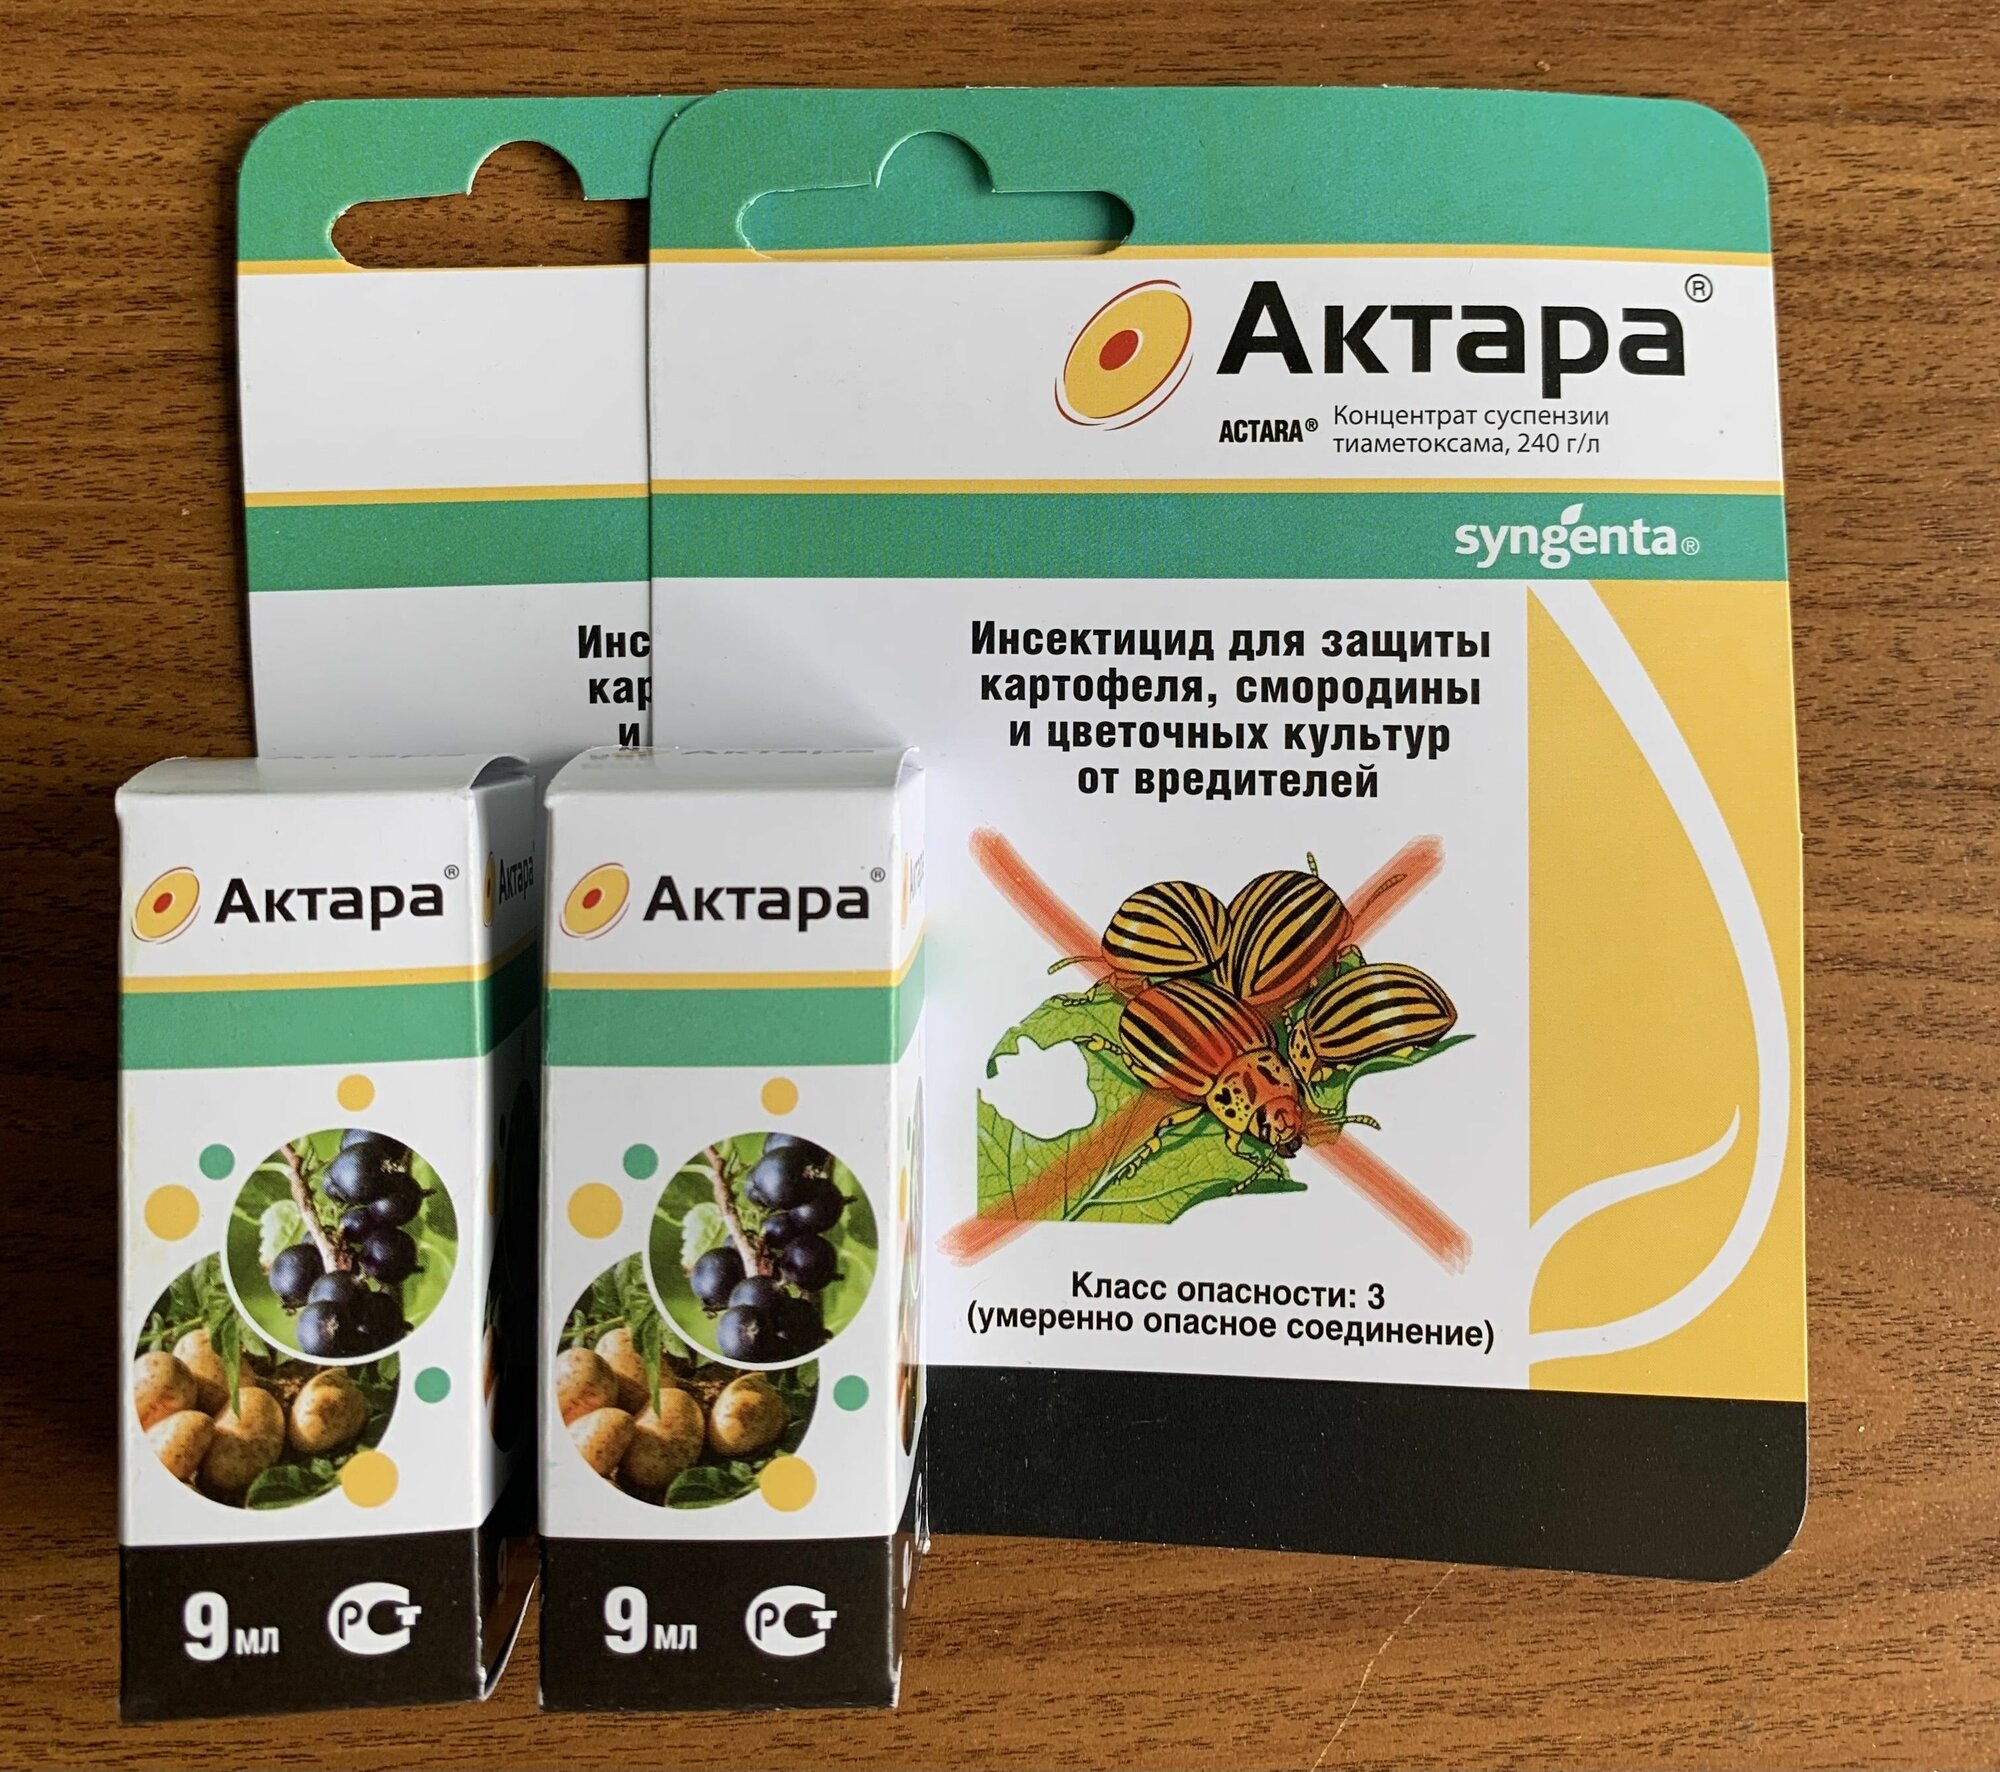 Актара (оригинал) - инсектицид от вредителей для картофеля, смородины и цветов от Syngenta, 9 гр. х 2 ампулы